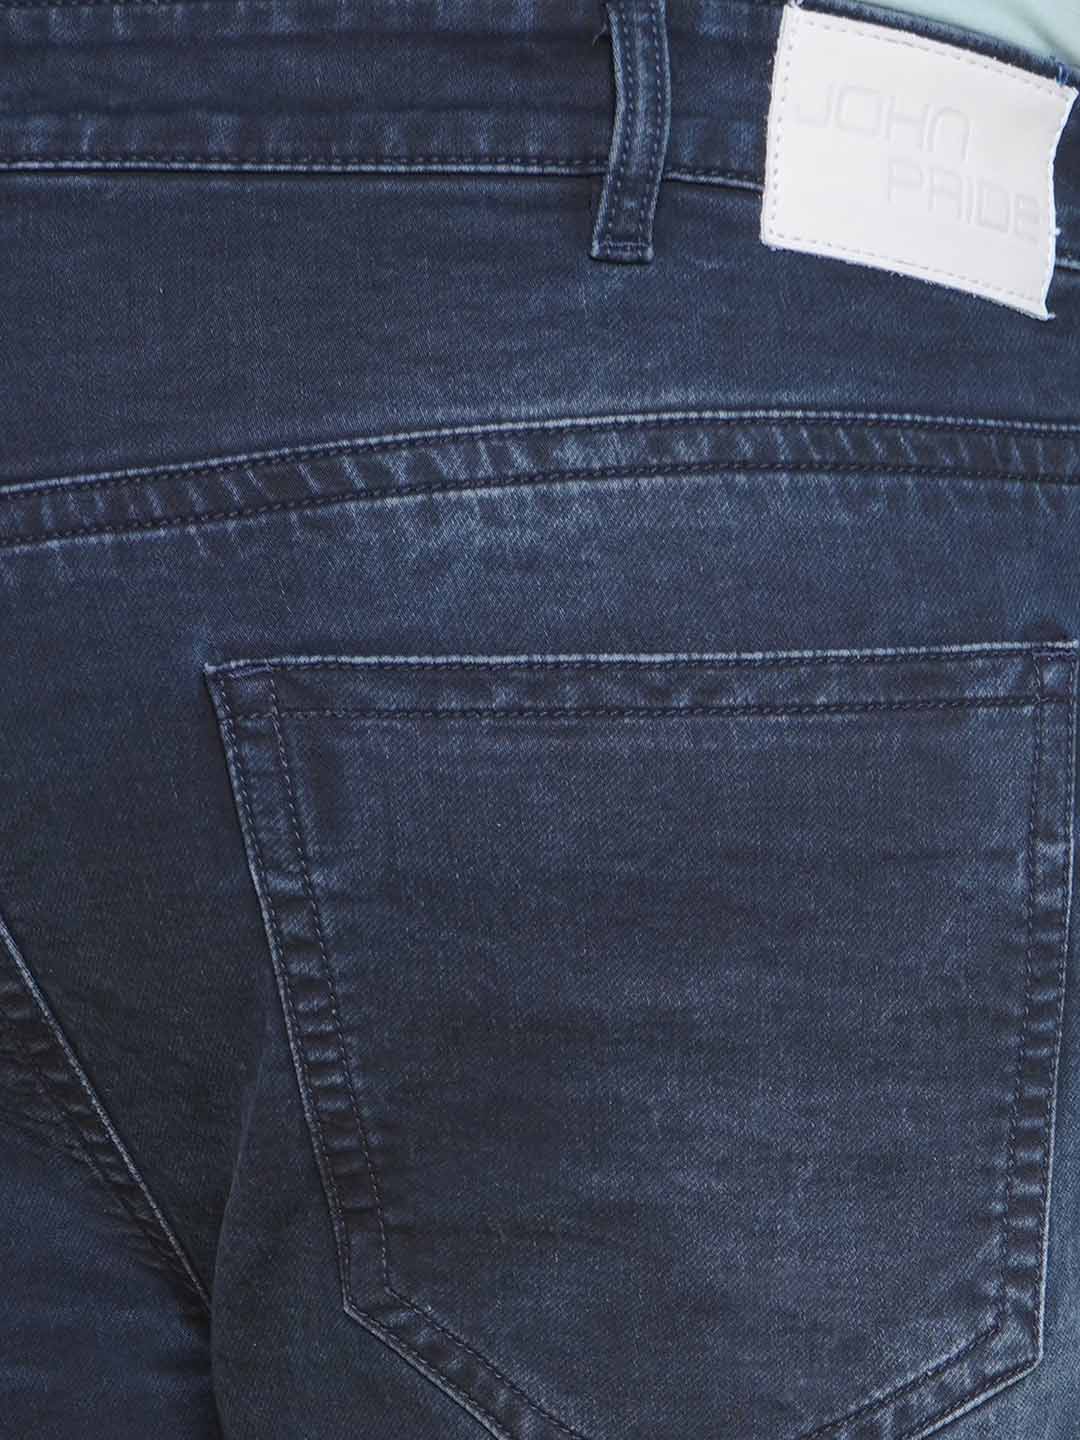 bottomwear/jeans/PJPJ6093/pjpj6093-2.jpg